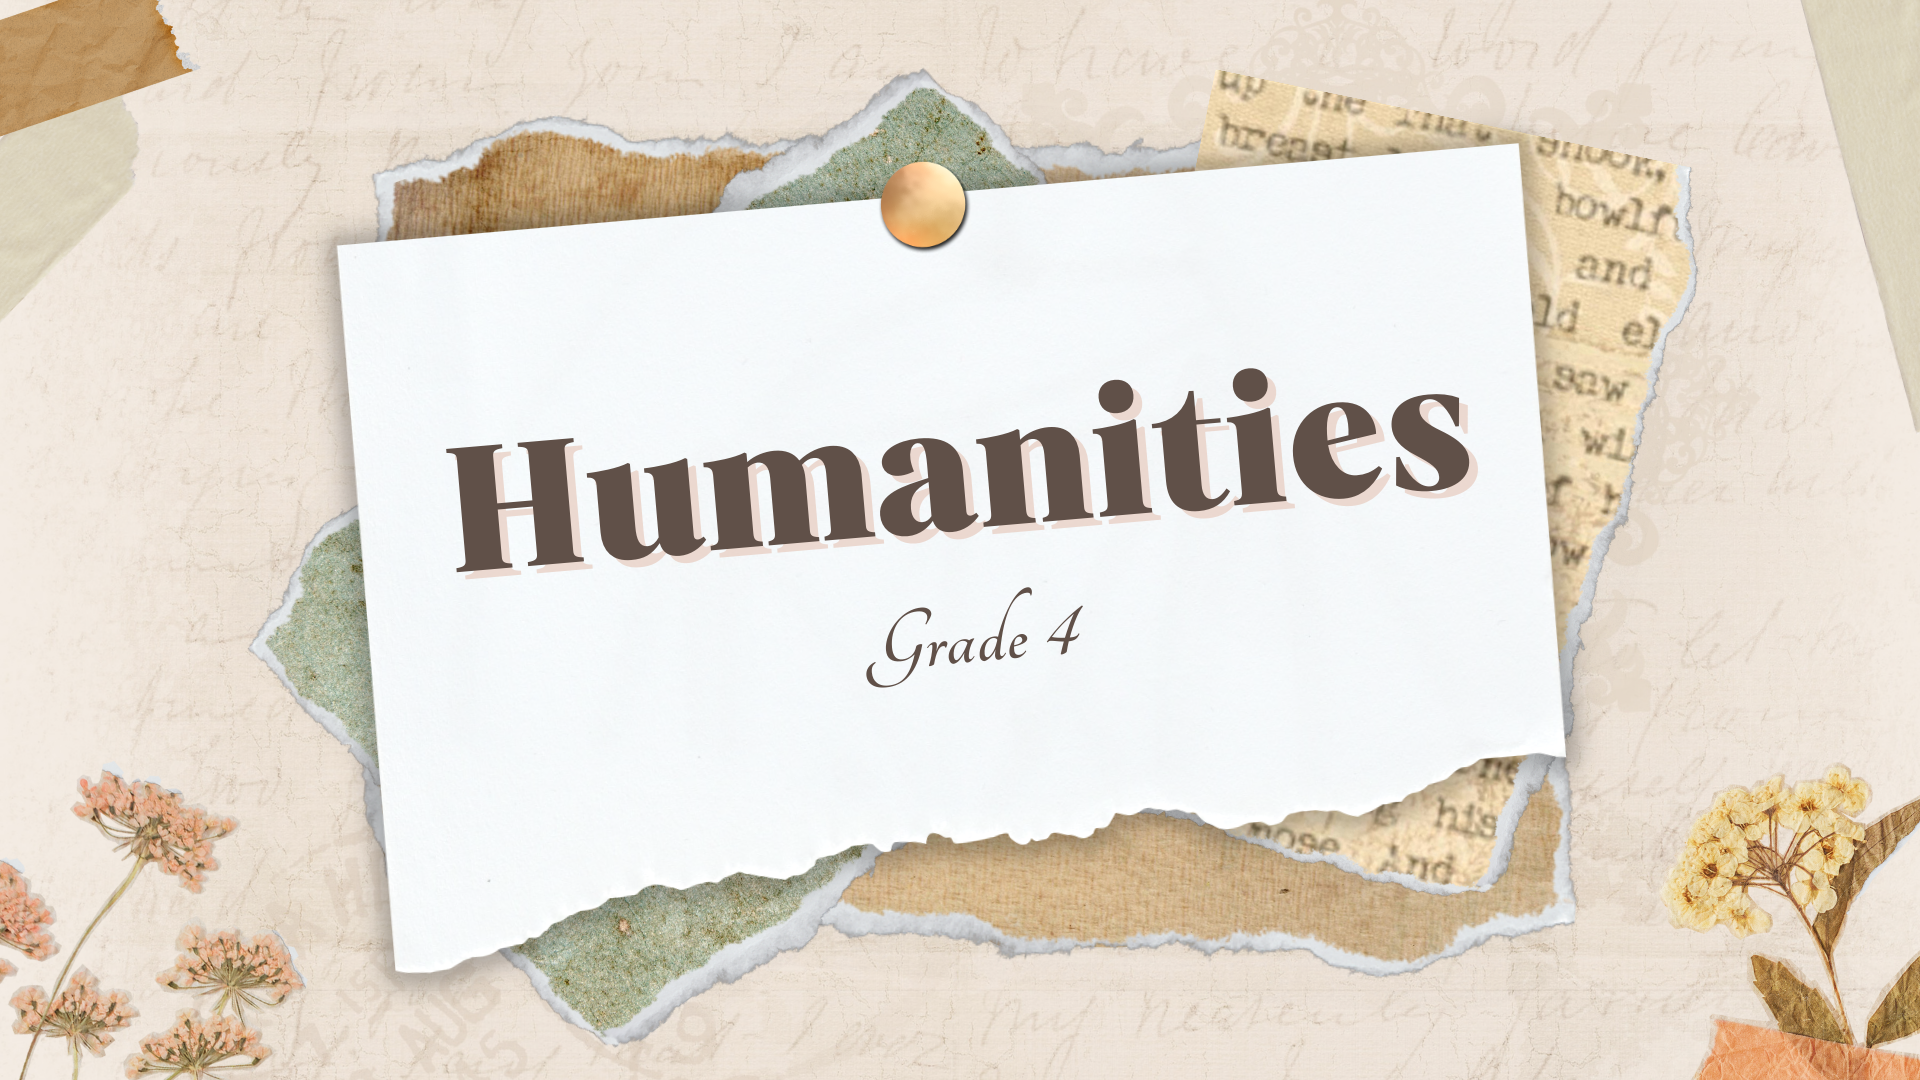 Humanities Grade 4